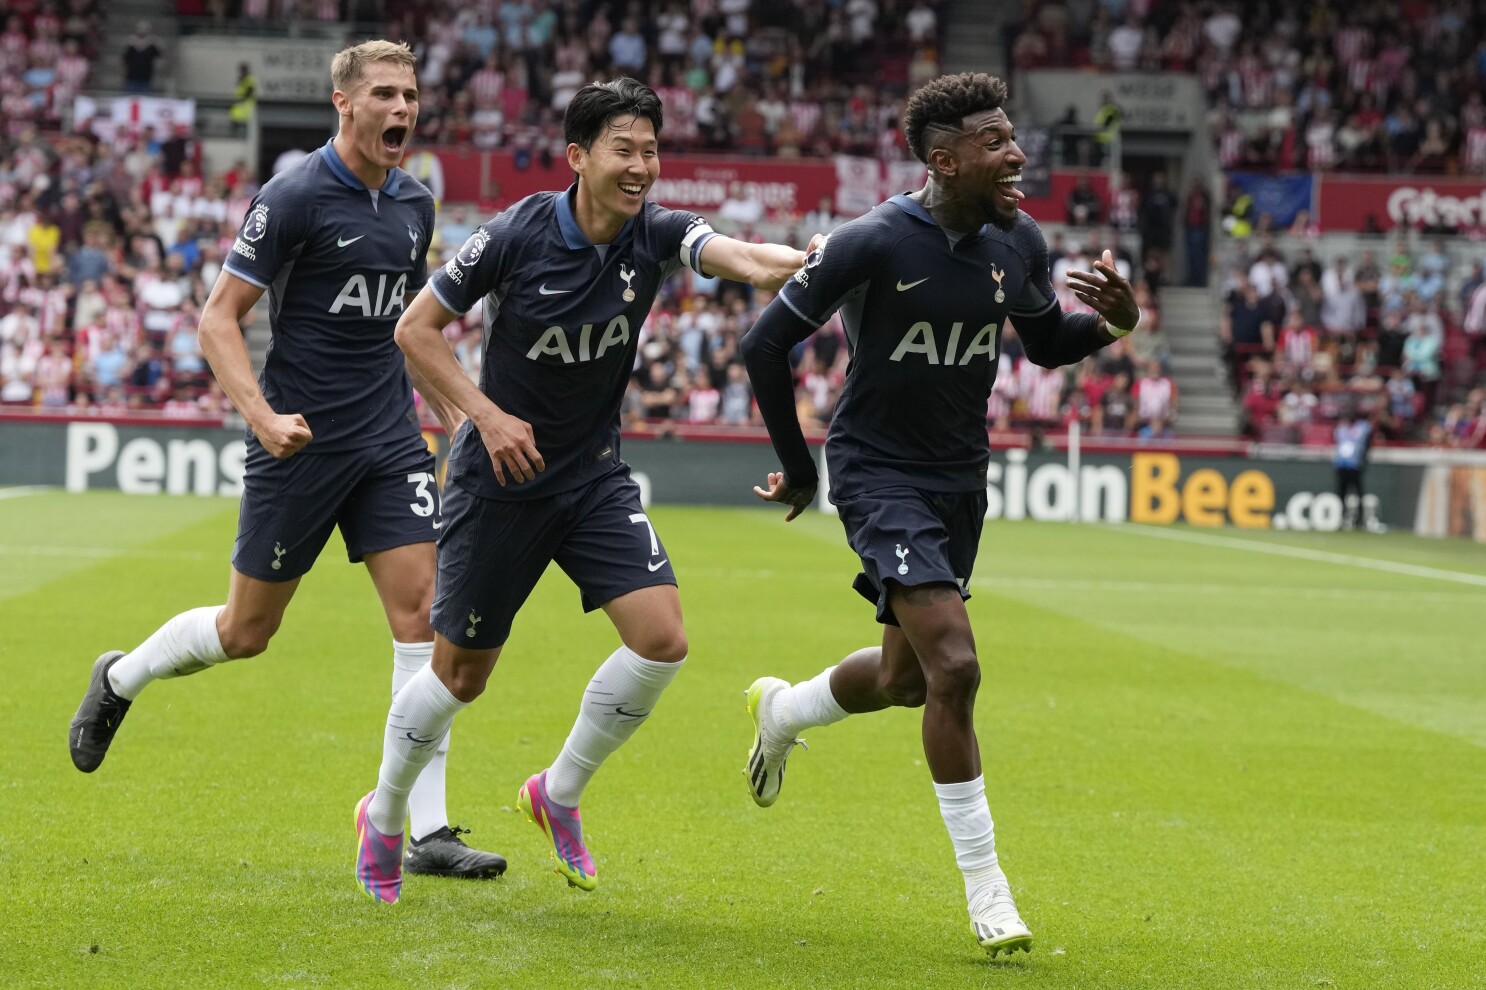 Highlights: Tottenham 2-2 Liverpool